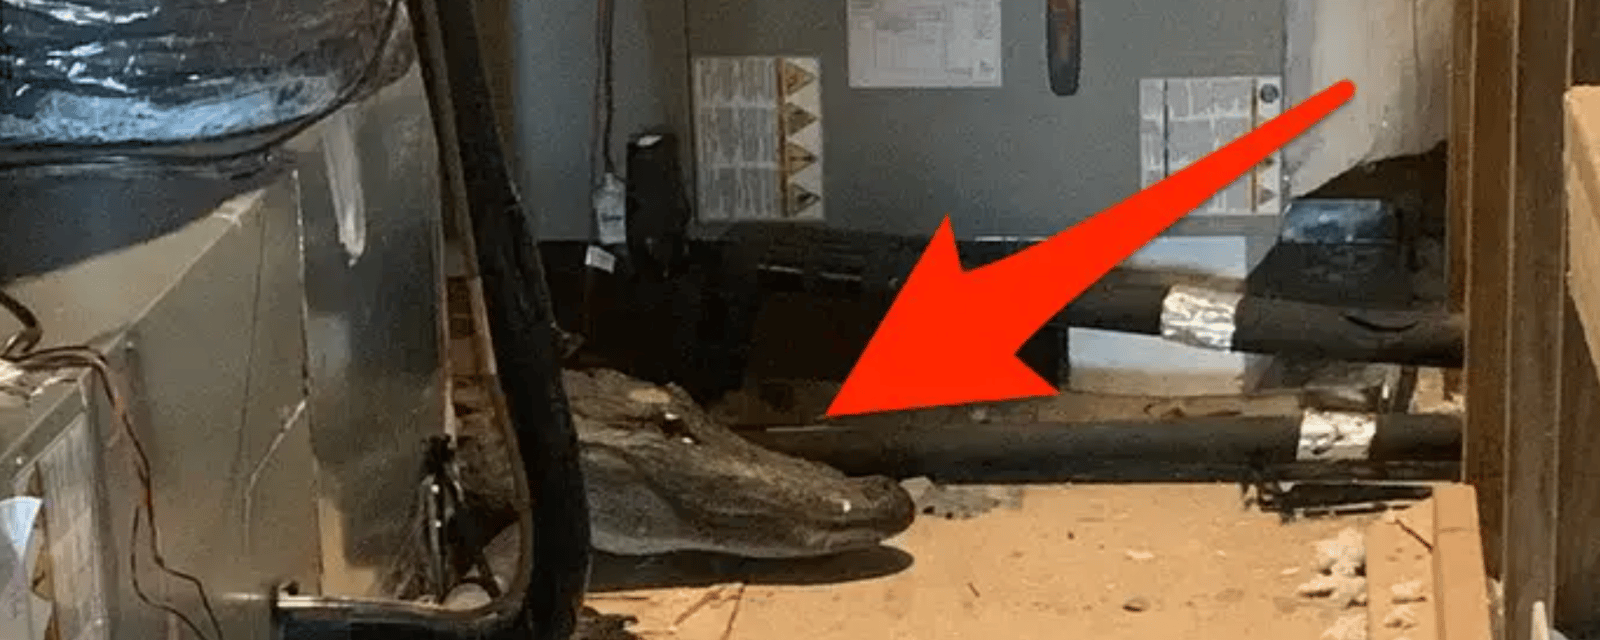 Un inspecteur fait le saut et tombe sur un alligator dans le grenier d'une maison 